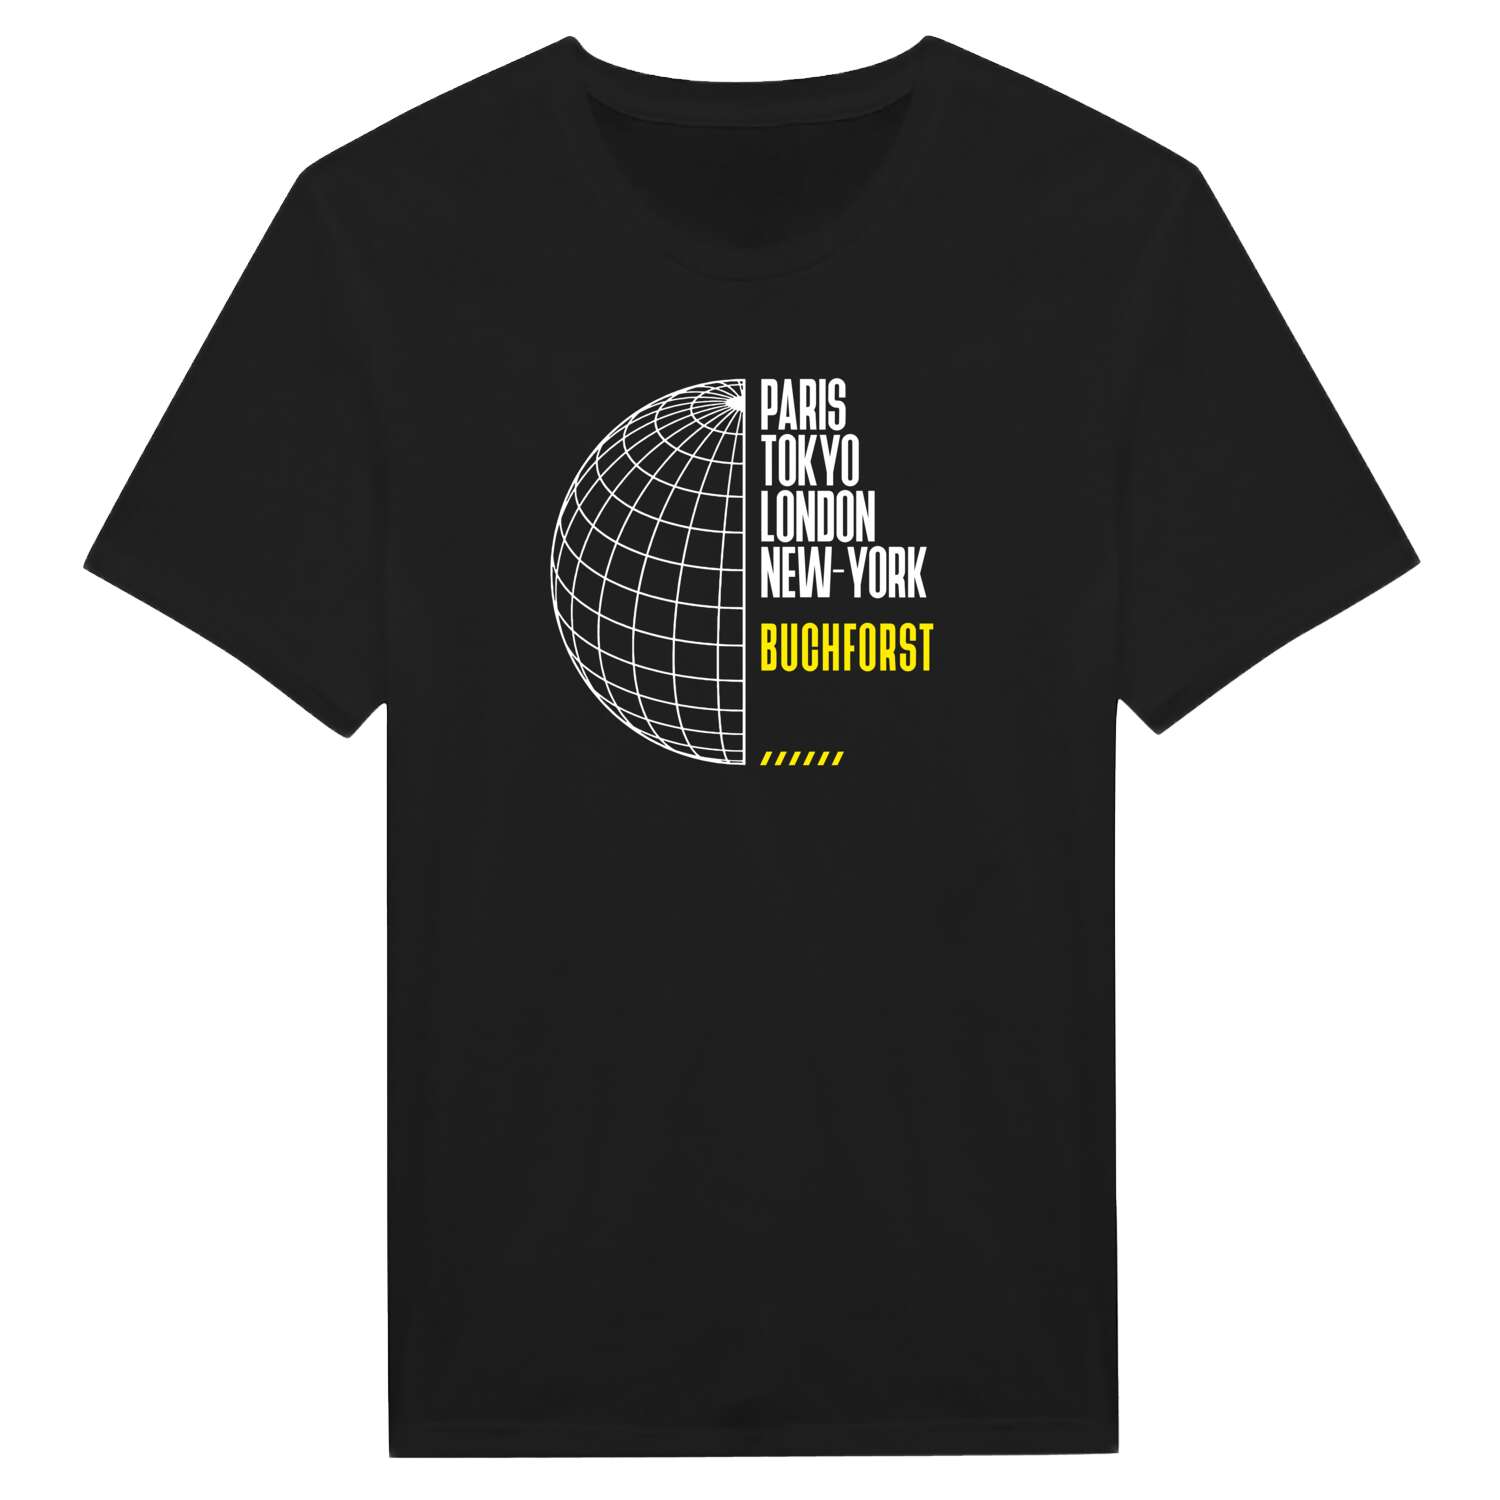 Buchforst T-Shirt »Paris Tokyo London«